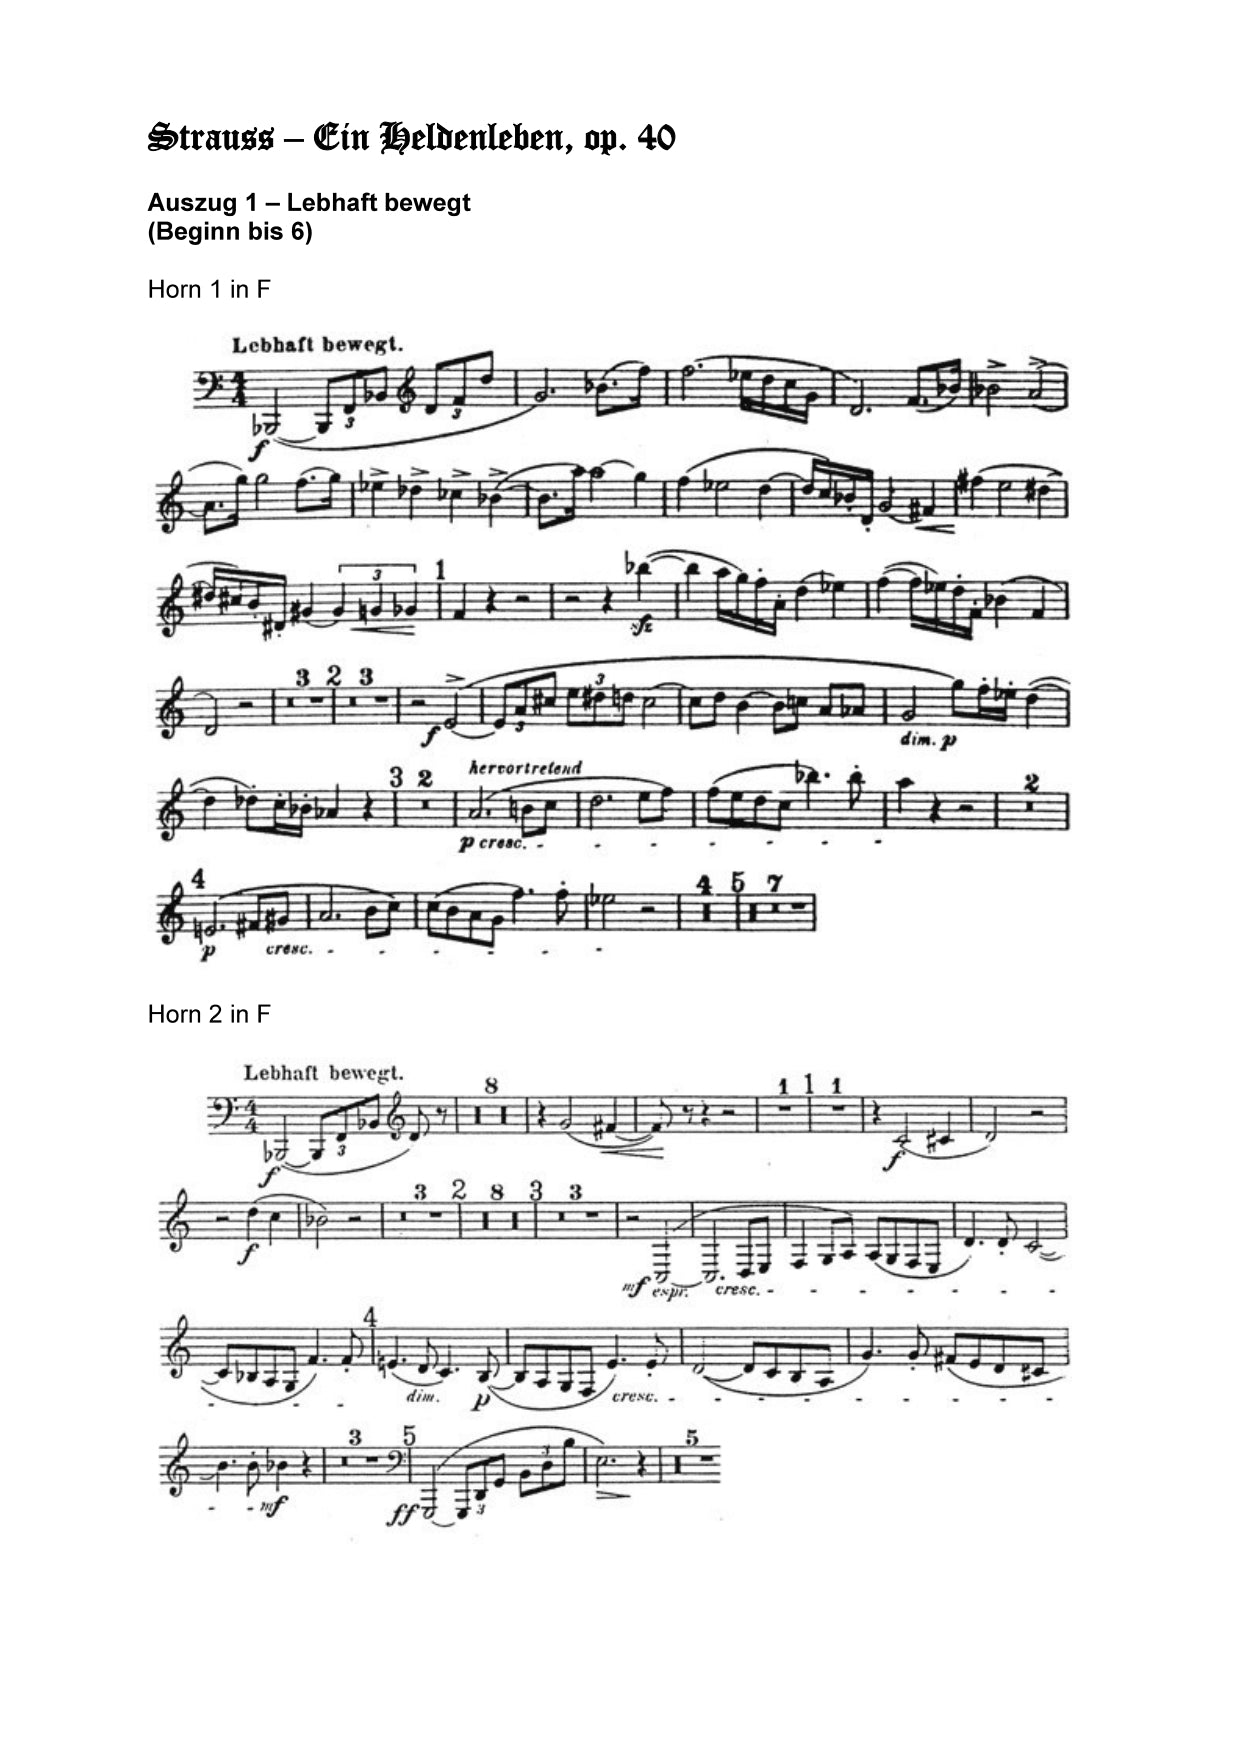 Orchester Studie - Richard Strauss - ein Heldenleben, Horn 1,2,3,4